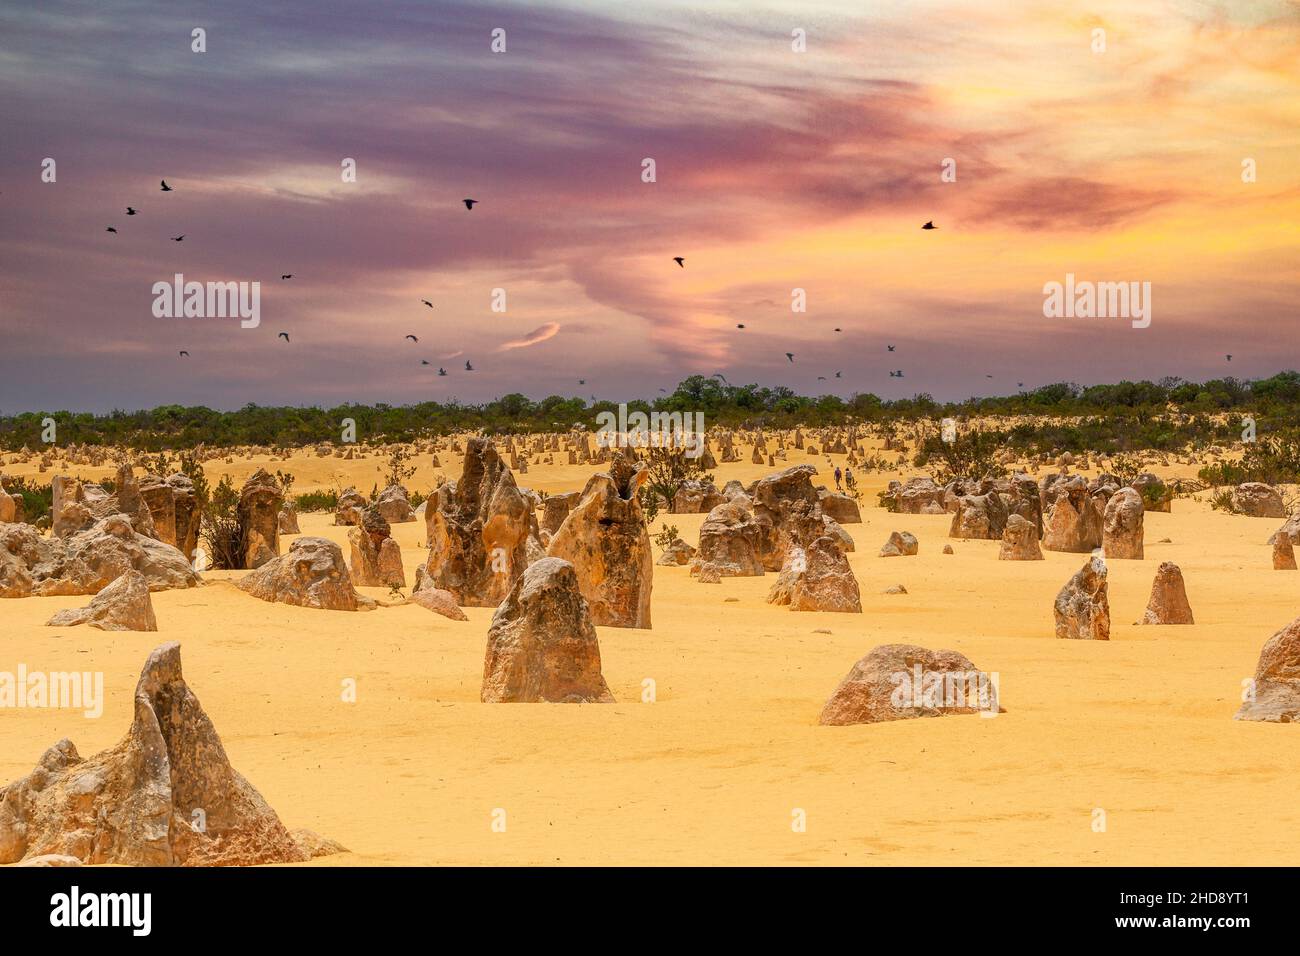 Die Pinnacles sind ein Wahrzeichen, das aus verwitterten Kalksteinsäulen besteht und in der Pinnacles-Wüste, einem Teil des Nambung-Nationalparks, zu sehen ist Stockfoto